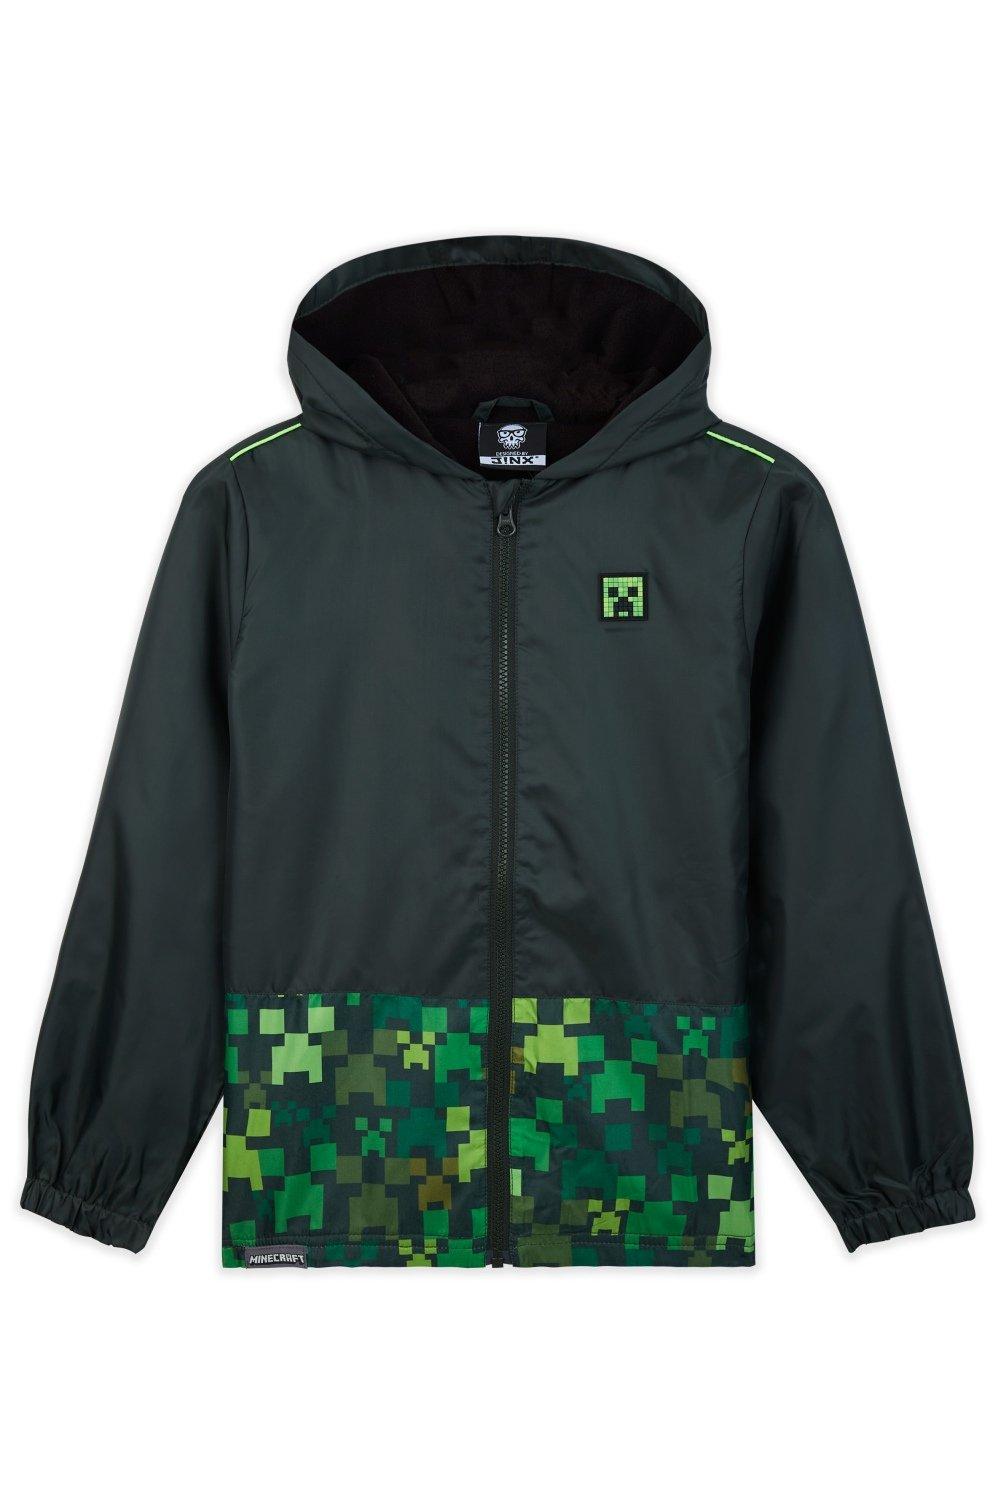 Уличная куртка с капюшоном Minecraft, мультиколор уличная куртка с капюшоном minecraft мультиколор